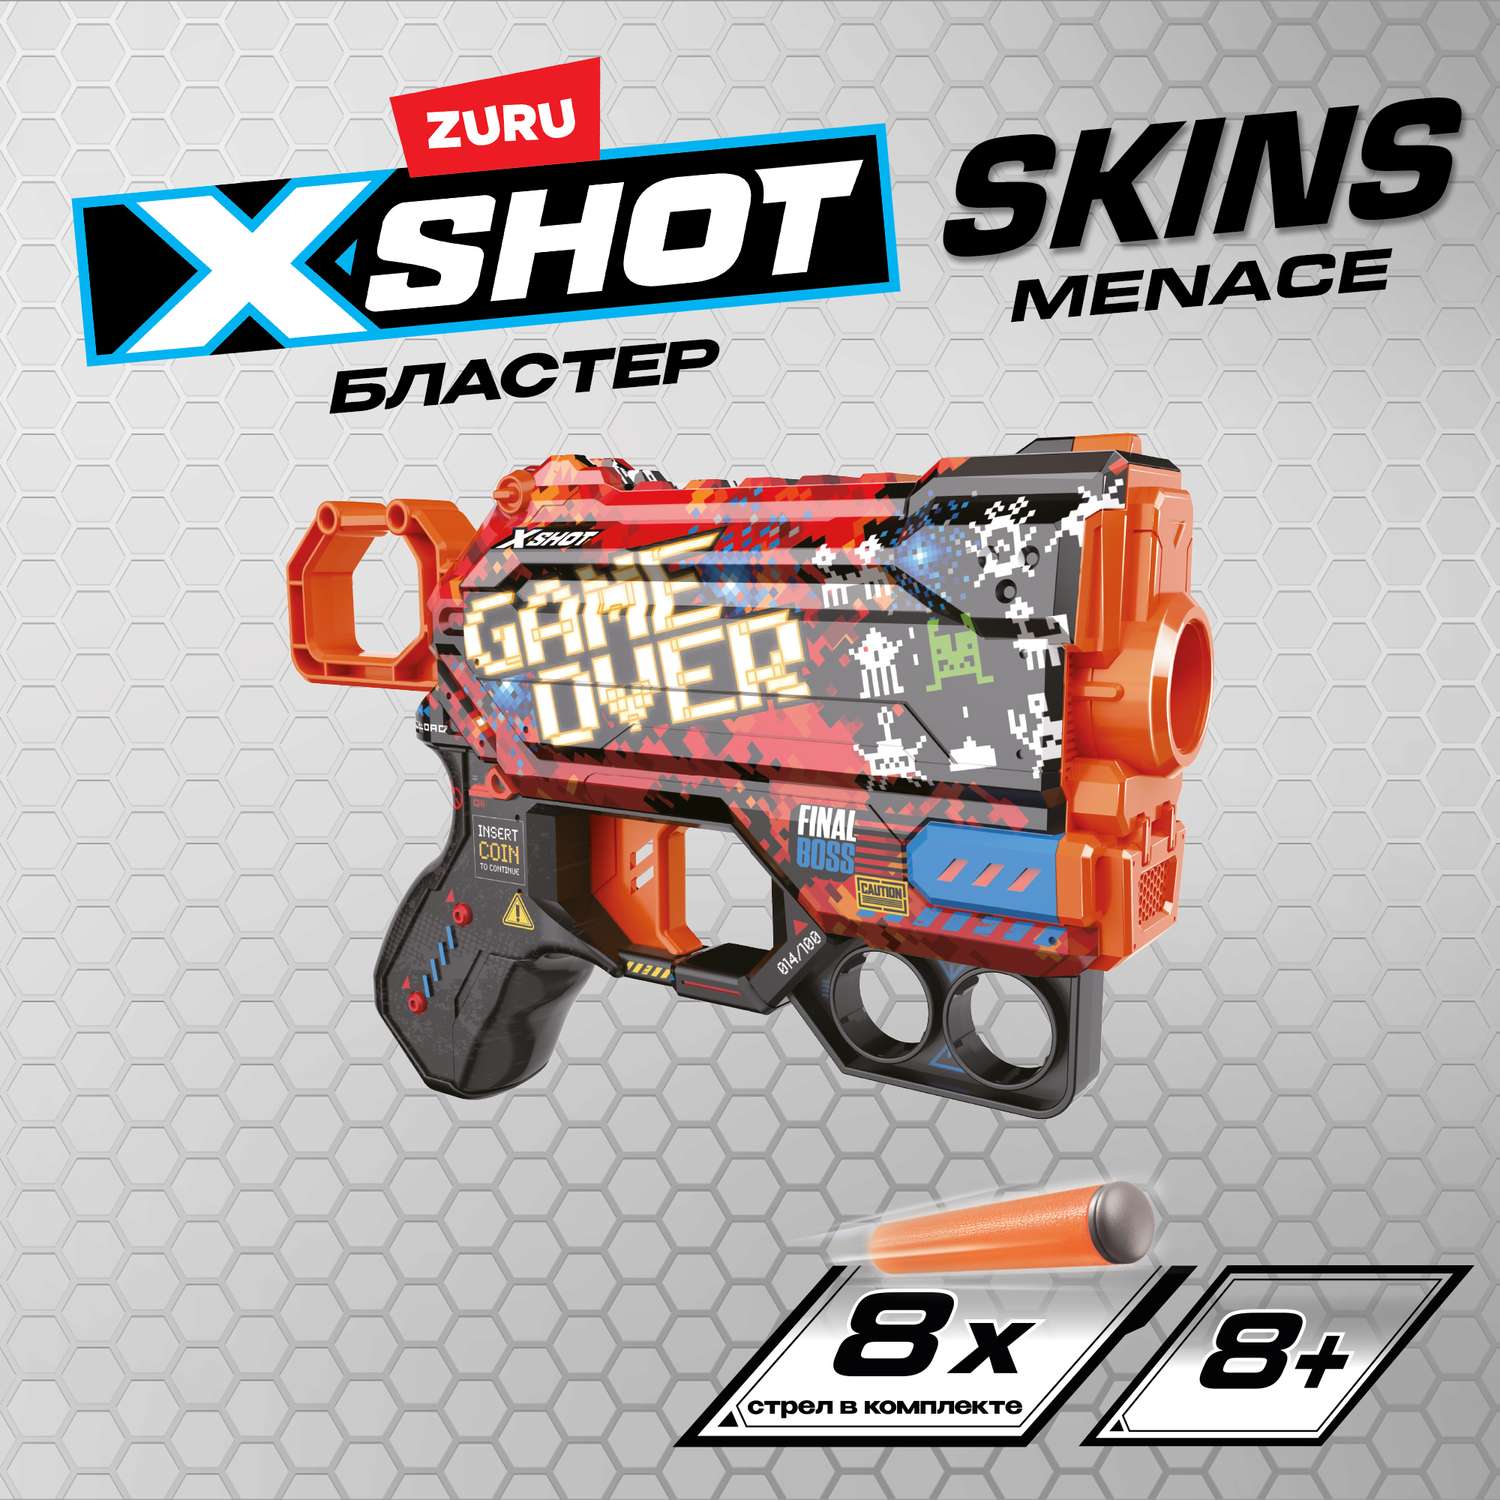 Набор для стрельбы X-SHOT  Скинс менейс в ассортименте 36515 - фото 1